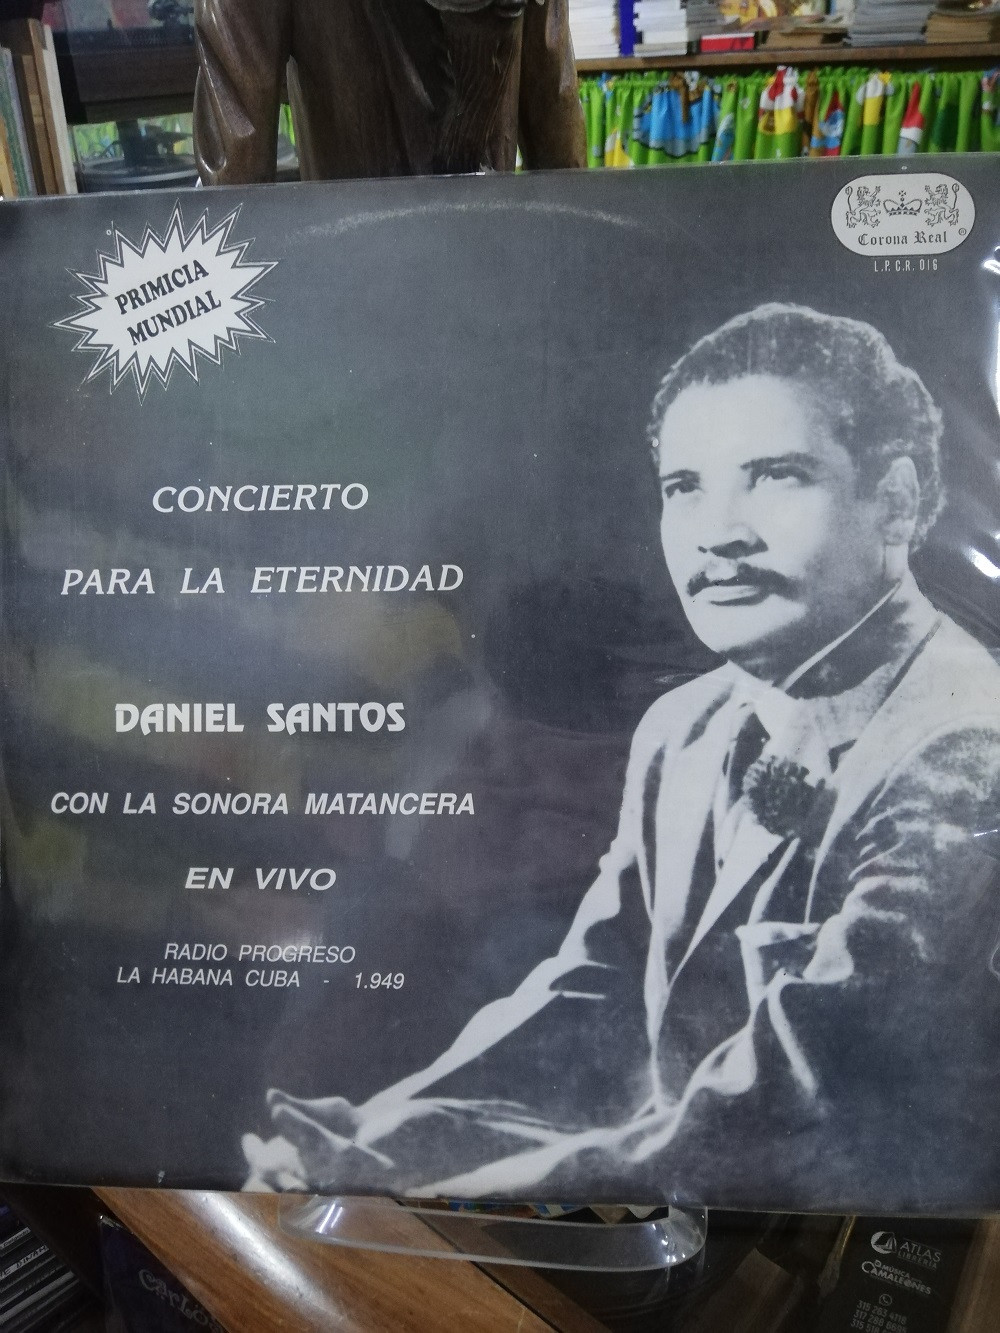 Imagen LP DANIEL SANTOS CON LA SONORA MATANCERA - CONCIERTO PARA LA ETERNIDAD, RADIO PROGRESO LA HABANA CUBA 1949 1